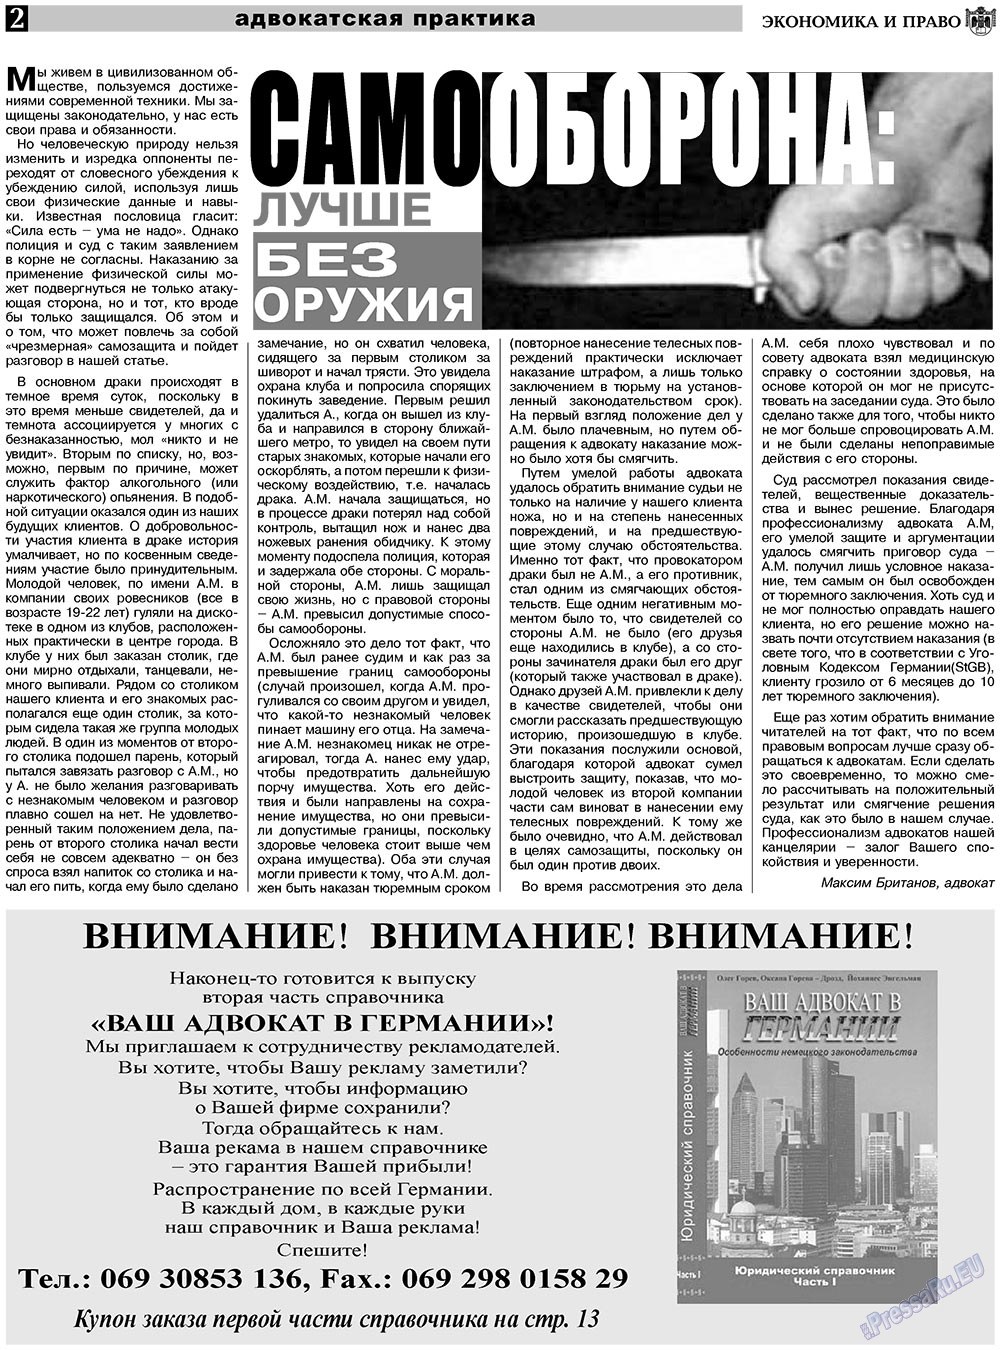 Экономика и право, газета. 2010 №11 стр.2